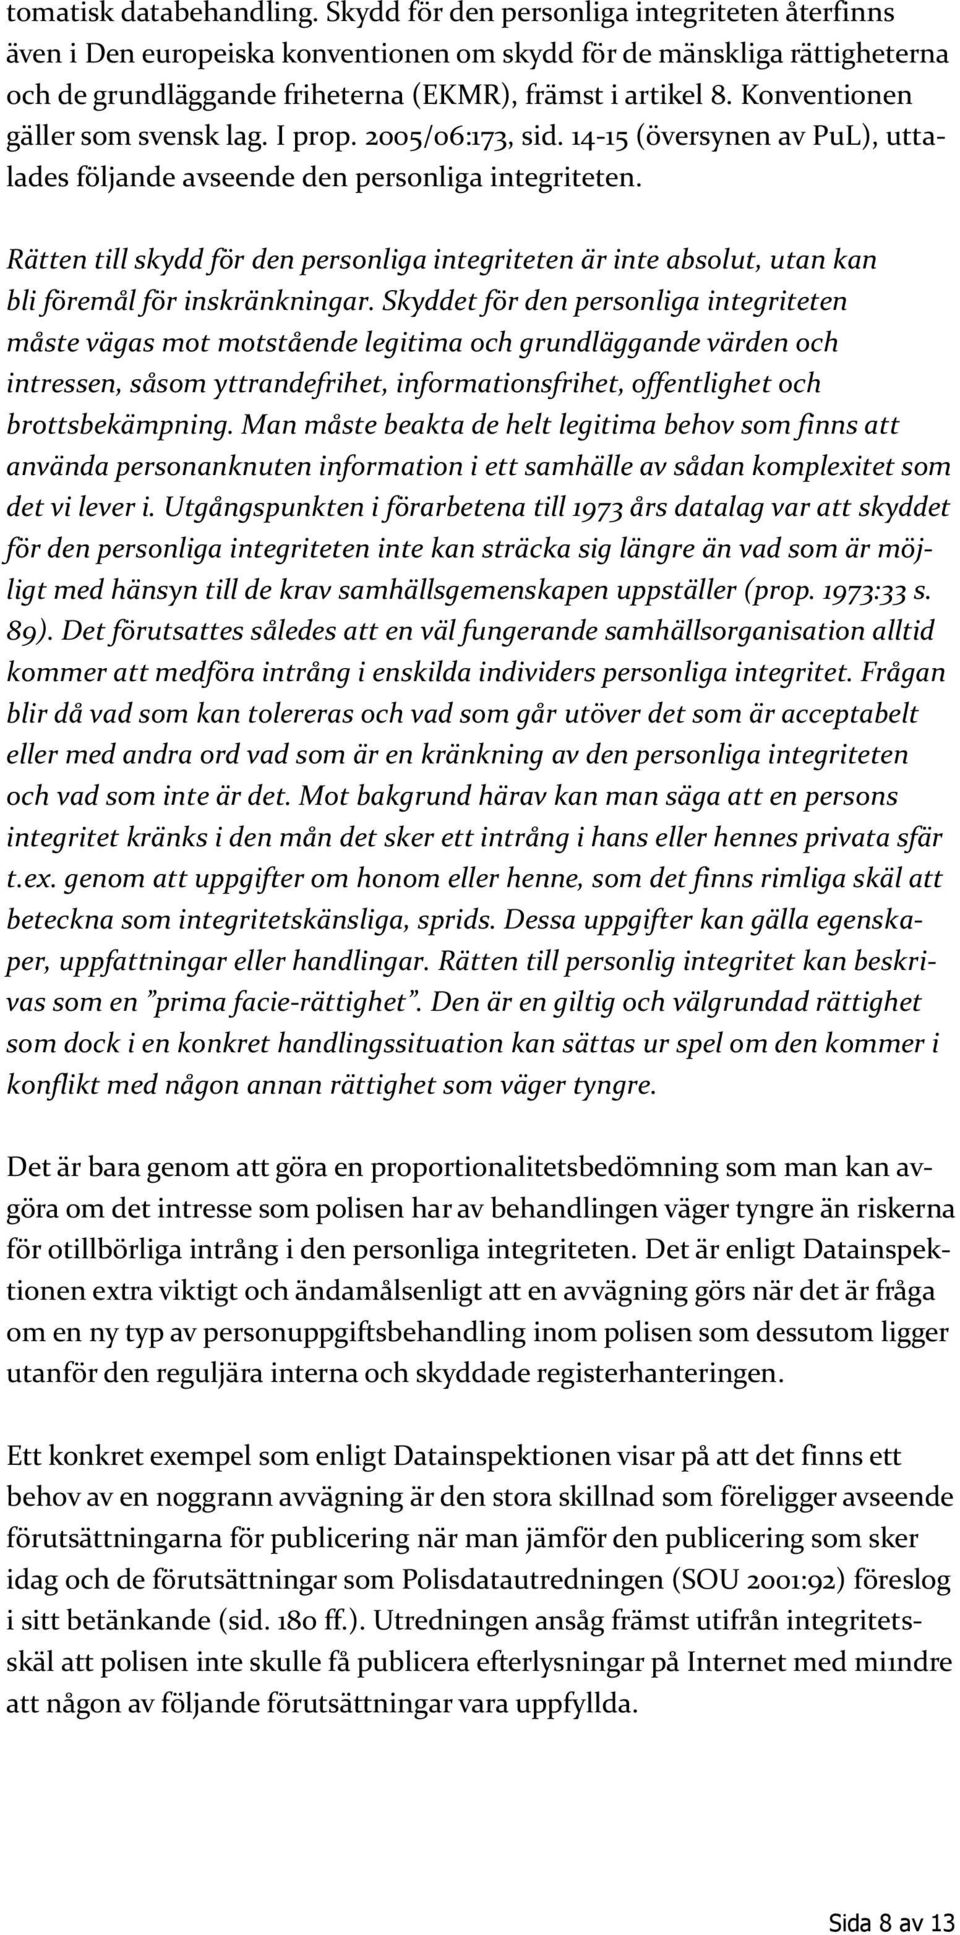 Konventionen gäller som svensk lag. I prop. 2005/06:173, sid. 14-15 (översynen av PuL), uttalades följande avseende den personliga integriteten.